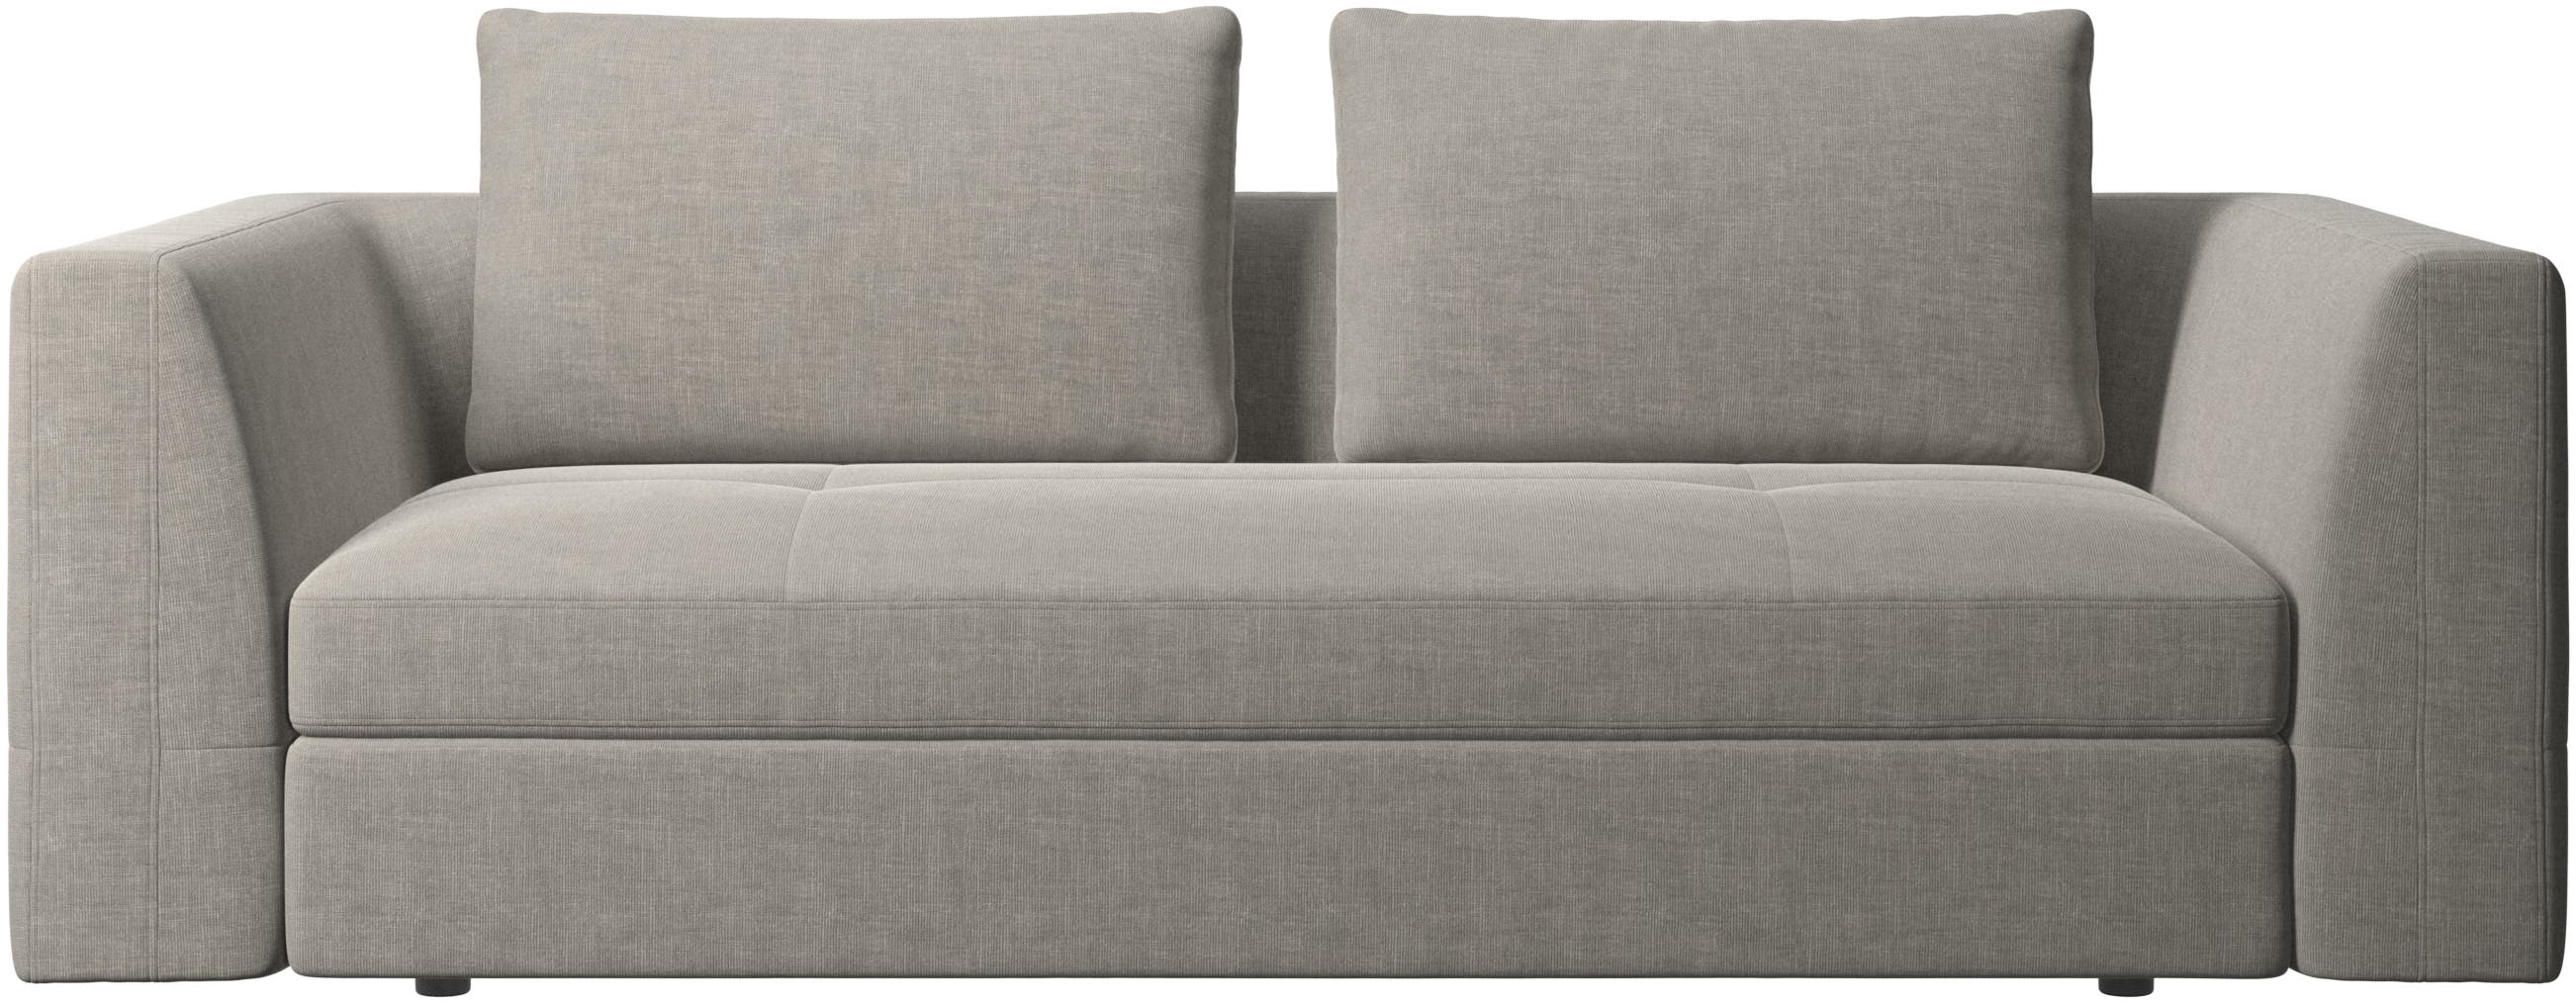 Bergamo 2½ pers. sofa